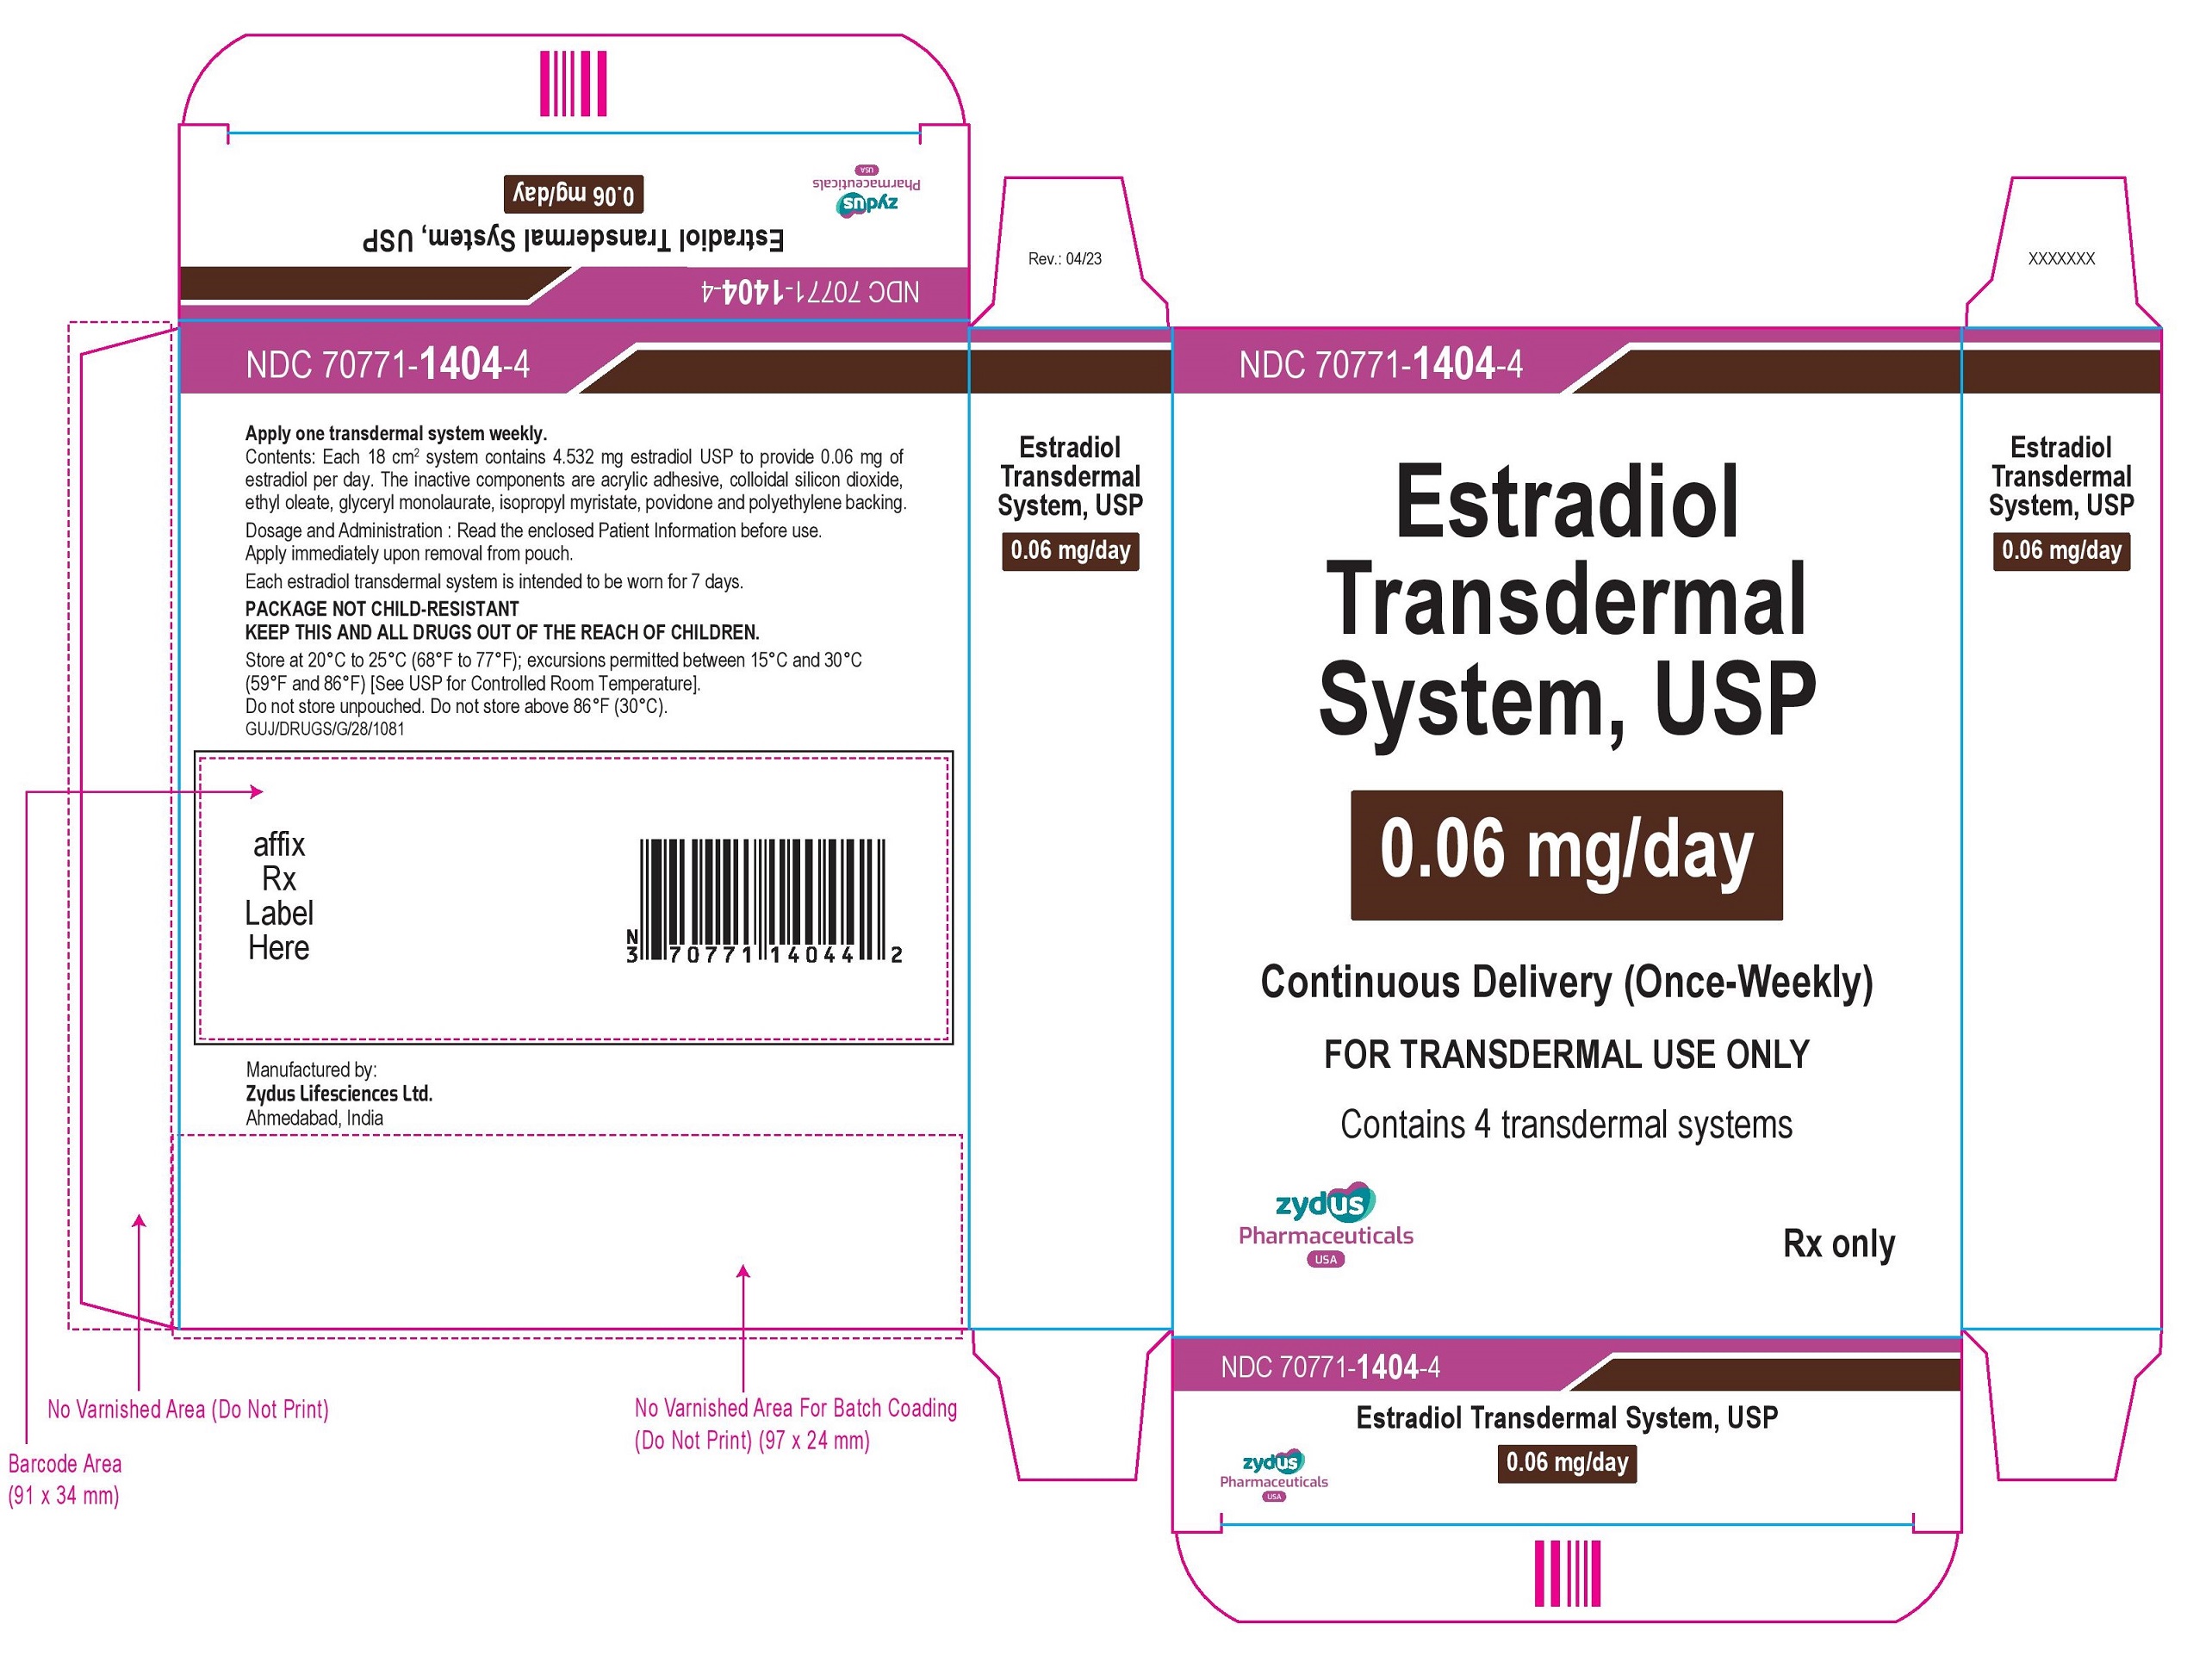 Estradiol Transdermal System USP, 0.06mg per day